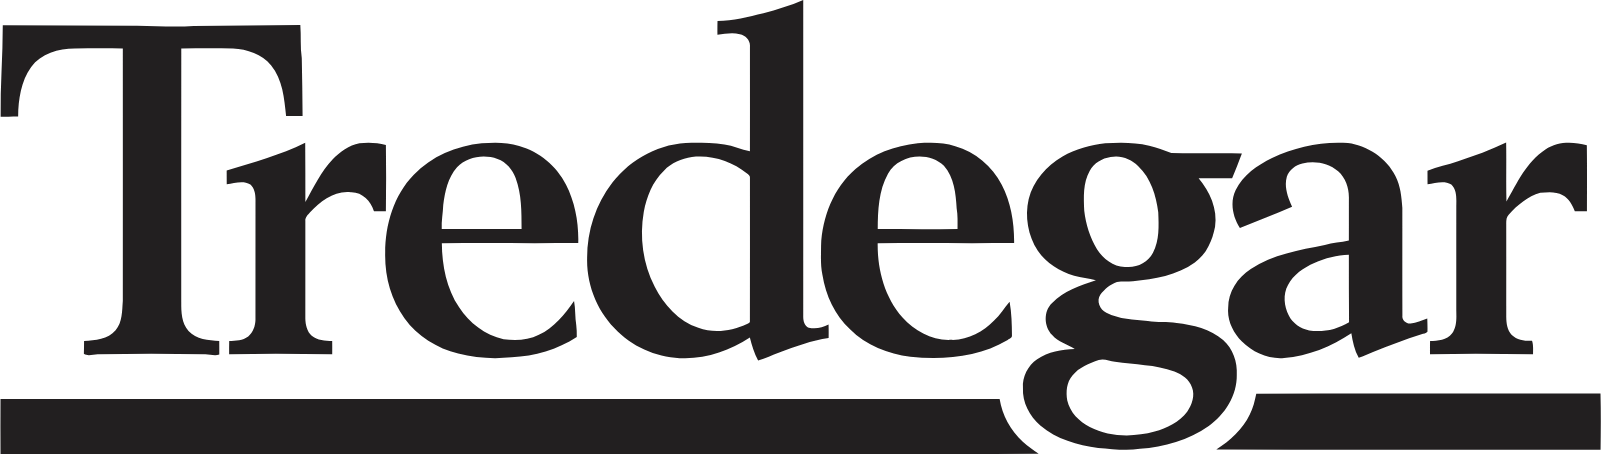 Tredegar logo large (transparent PNG)